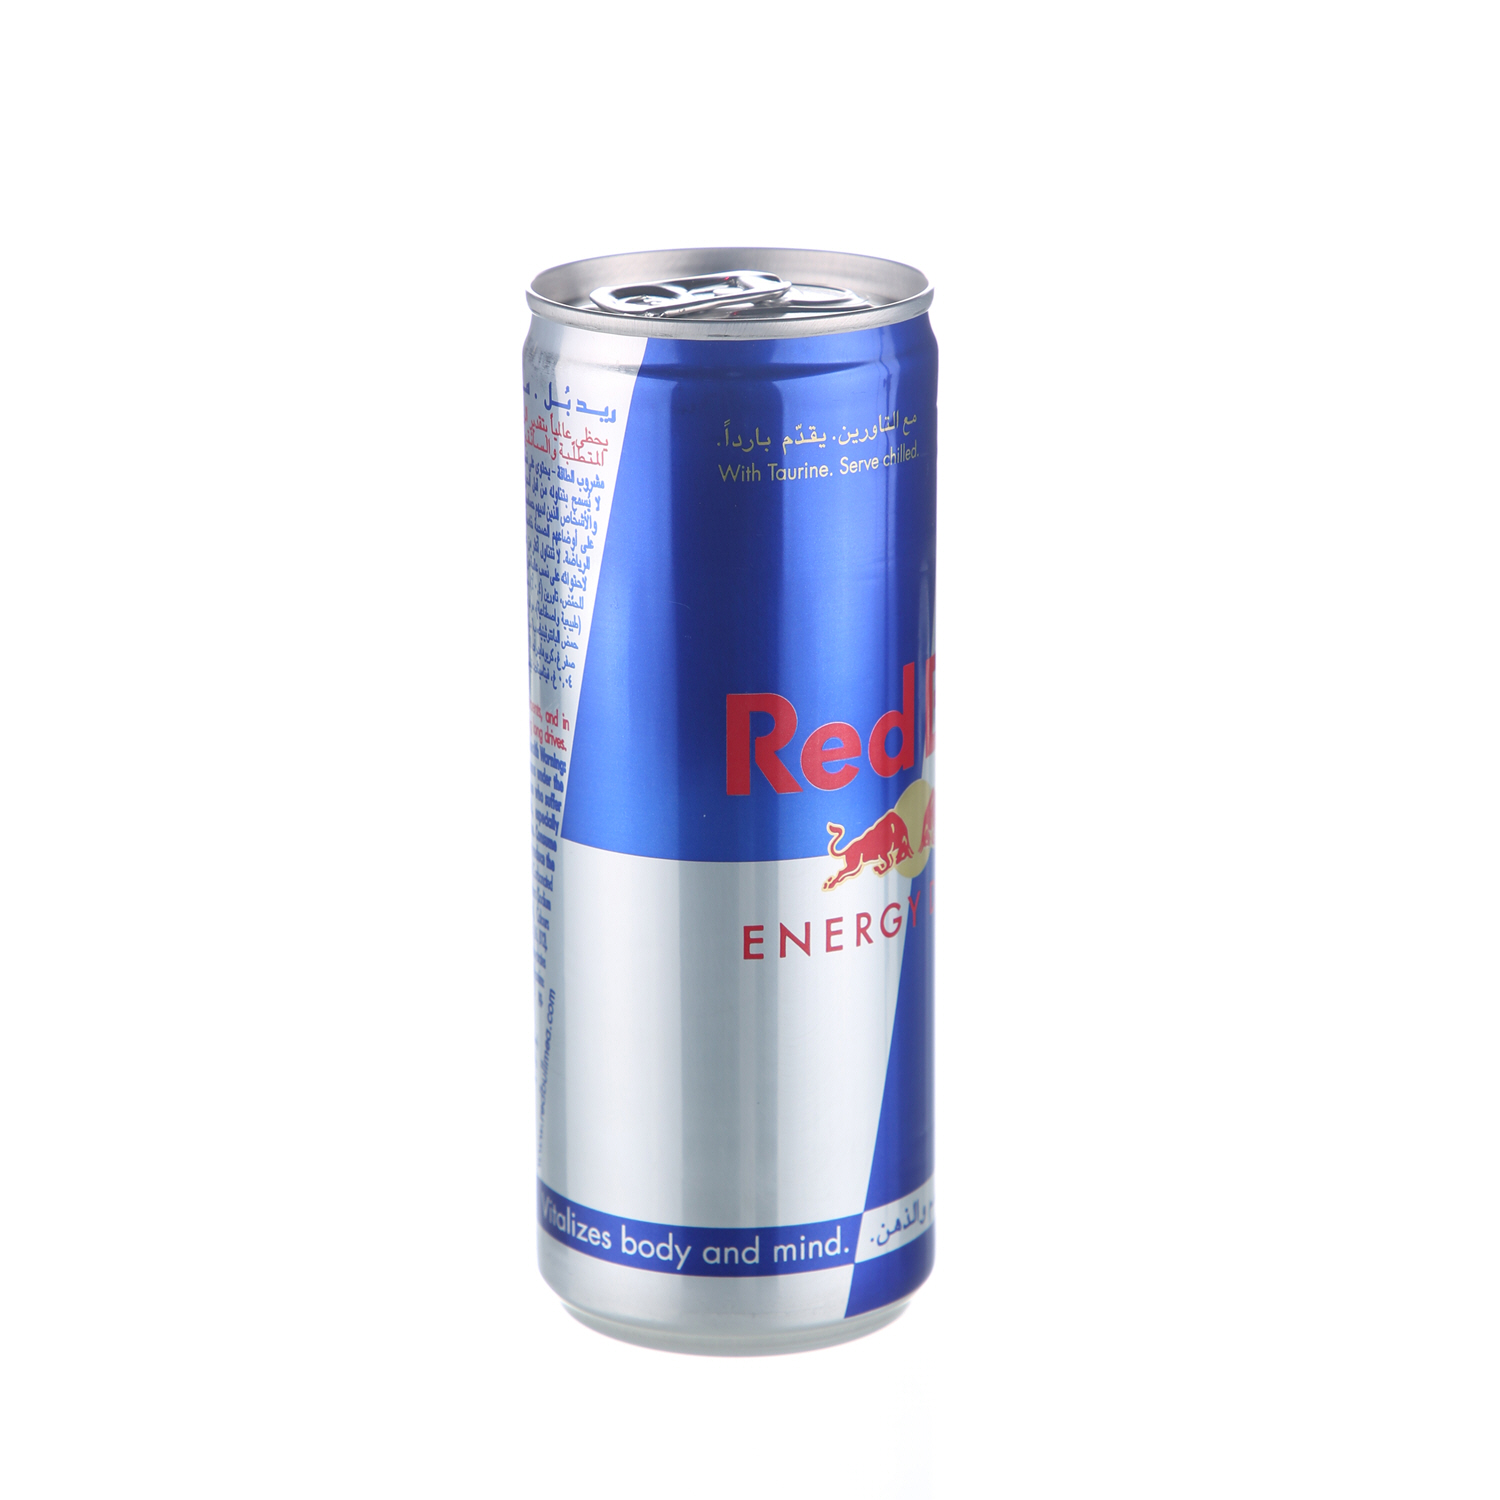 Red Bull Energy Drink 250ml